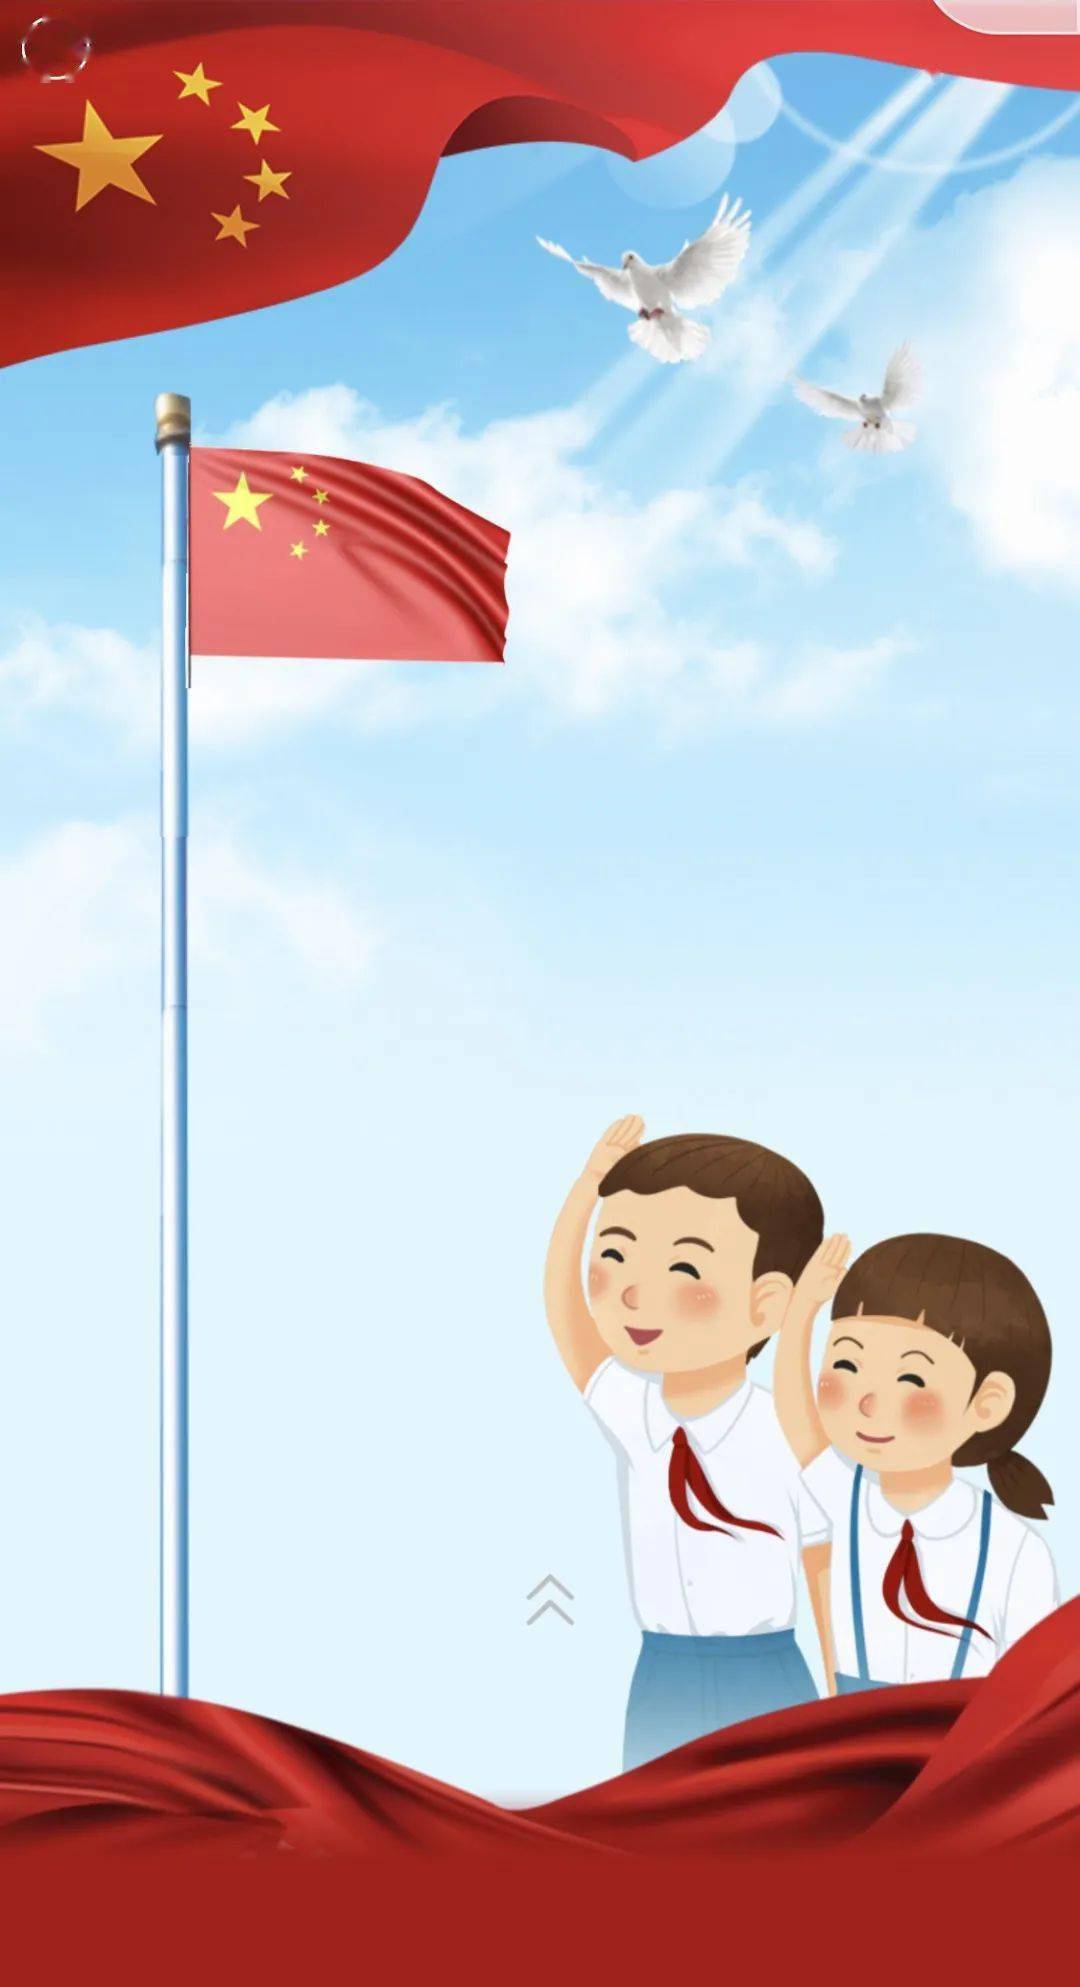 伟大梦想催人奋进 在新中国成立71周年之际 让我们 向国旗敬礼!